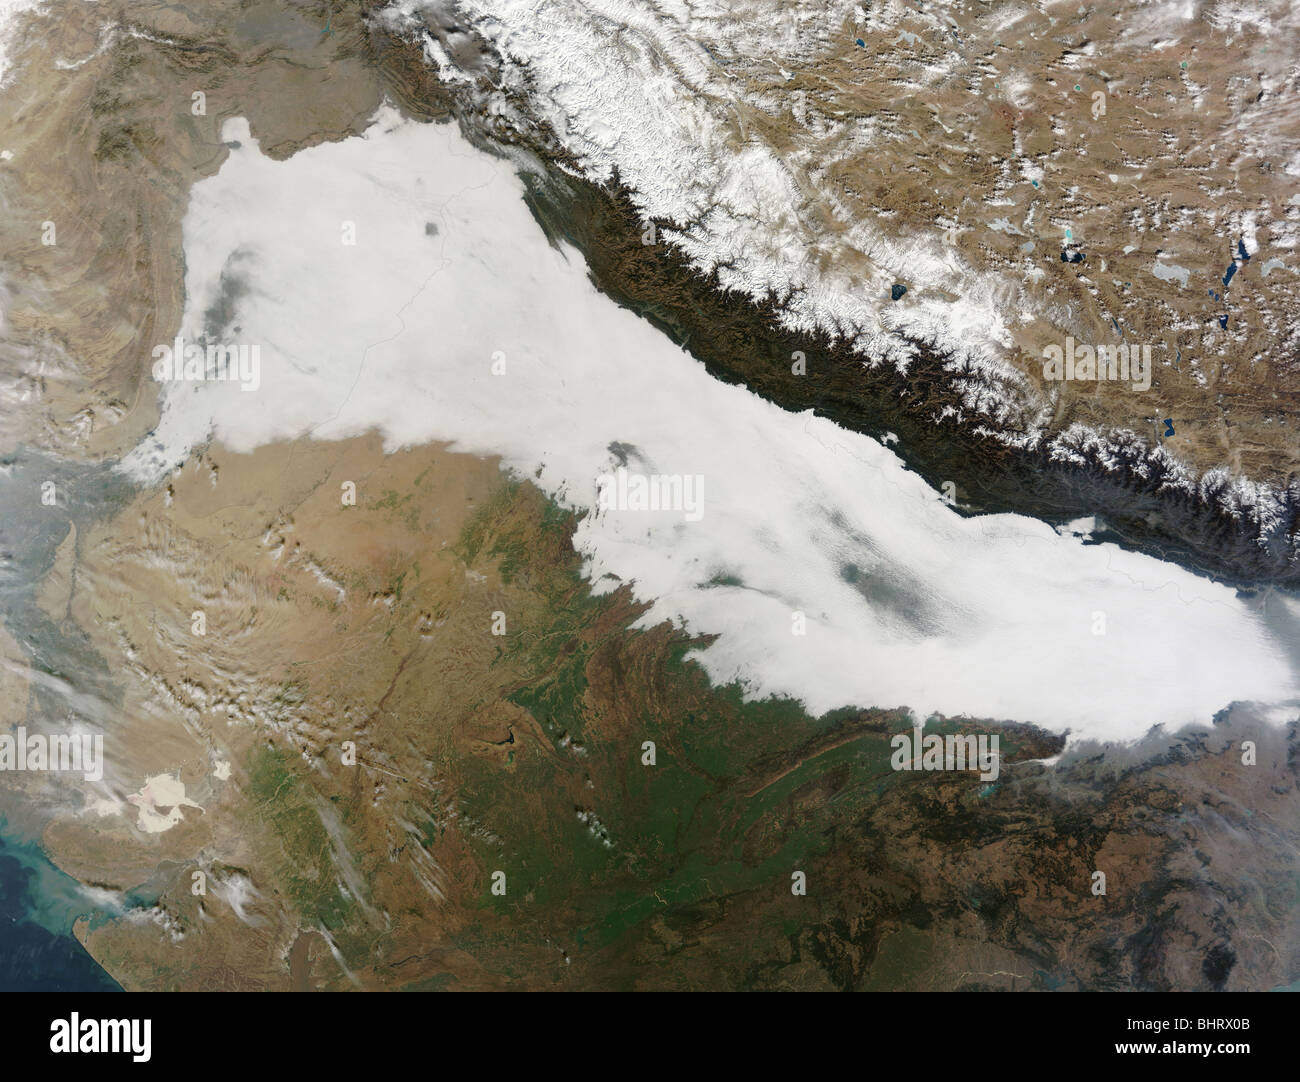 Una fitta coltre di nuvole basse copre le colline ai piedi delle montagne dell'Himalaya con qualche foschia visibile. Foto Stock